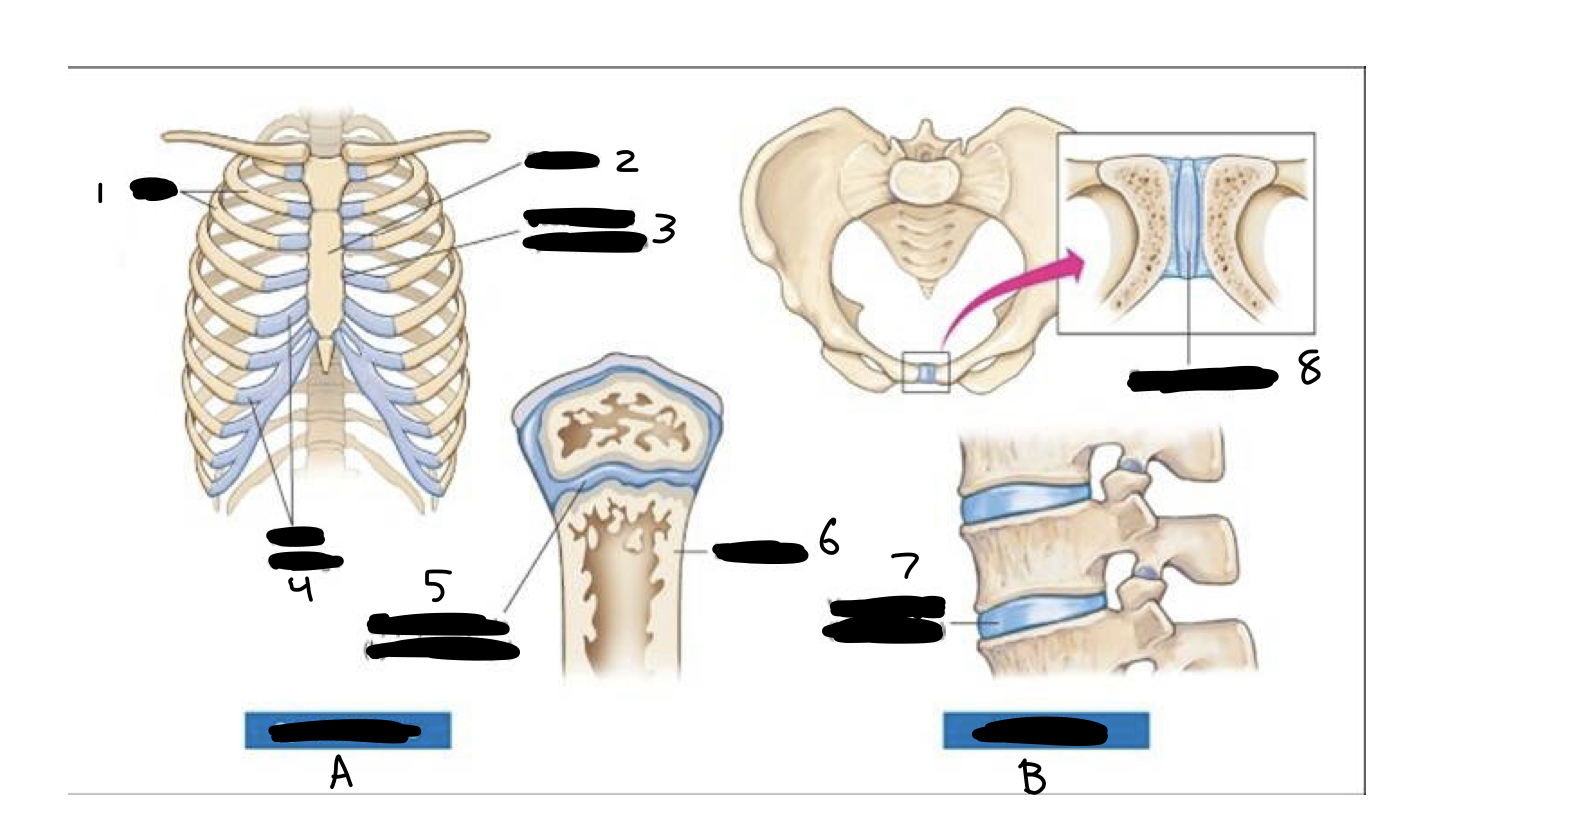 <ol><li><p>ribs</p></li><li><p>sternum</p></li><li><p>costosternal synchodrosis</p></li><li><p>costal cartilage</p></li><li><p>epiphyseal plate (hyaline cartilage)</p></li><li><p>long bone</p></li><li><p>vertebral disk (fibrocartilage)</p></li><li><p>symphysis pubis</p><p>A. synchondroses</p><p>B. symphyses</p></li></ol>